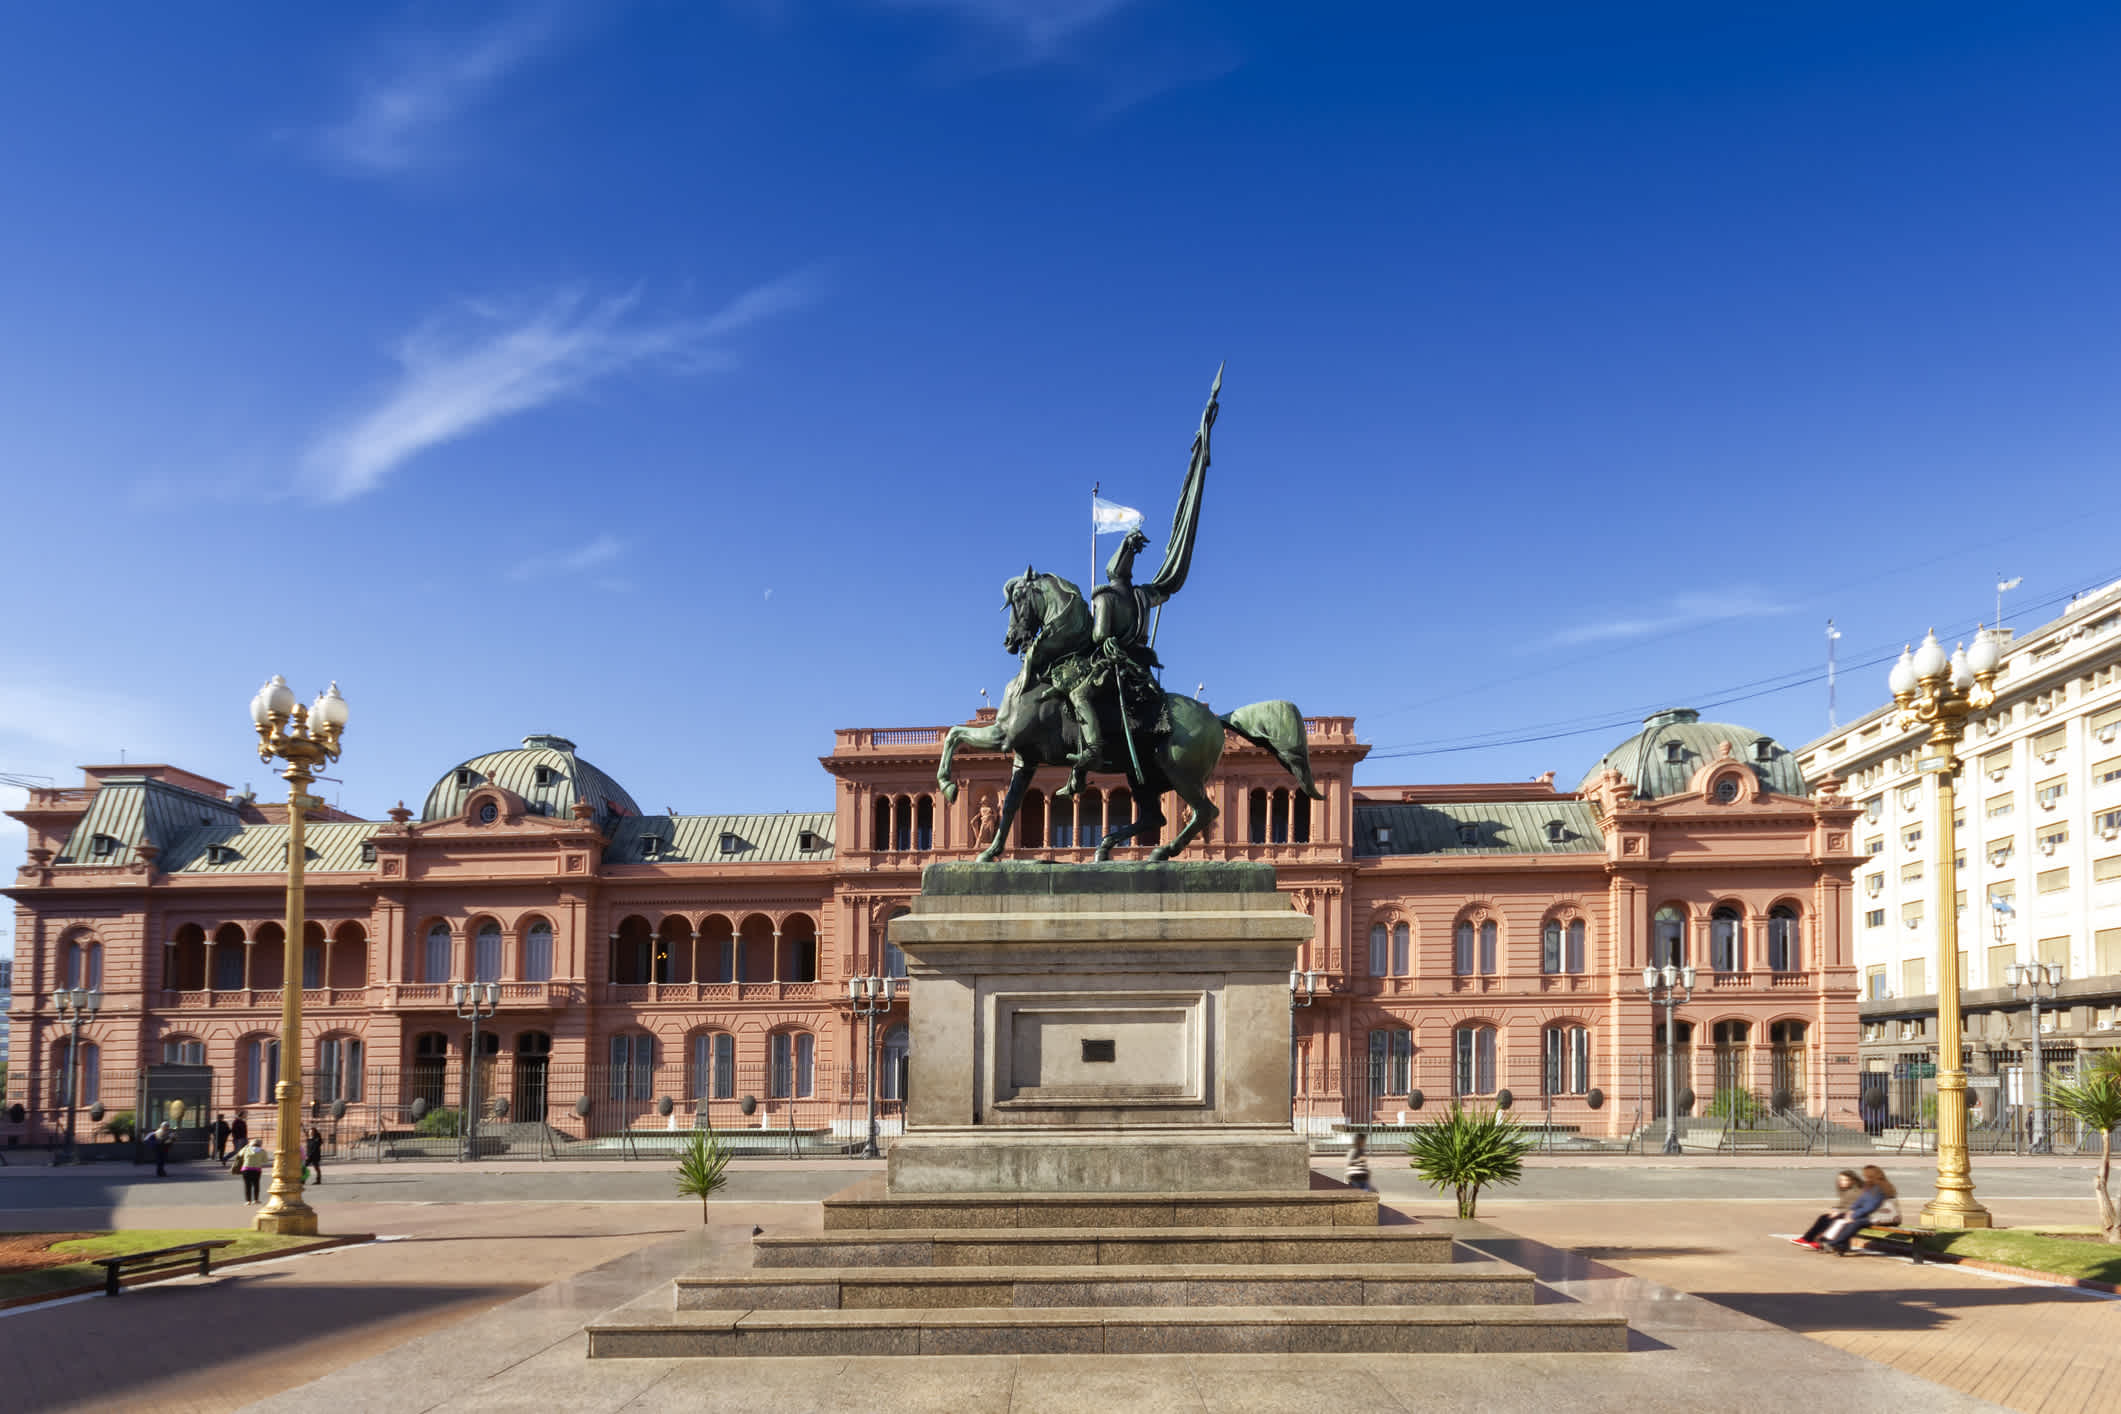 Foto der Plaza de Mayo in Buenos Aires mit der Statue von General Manuel Belgrano im Hintergrund